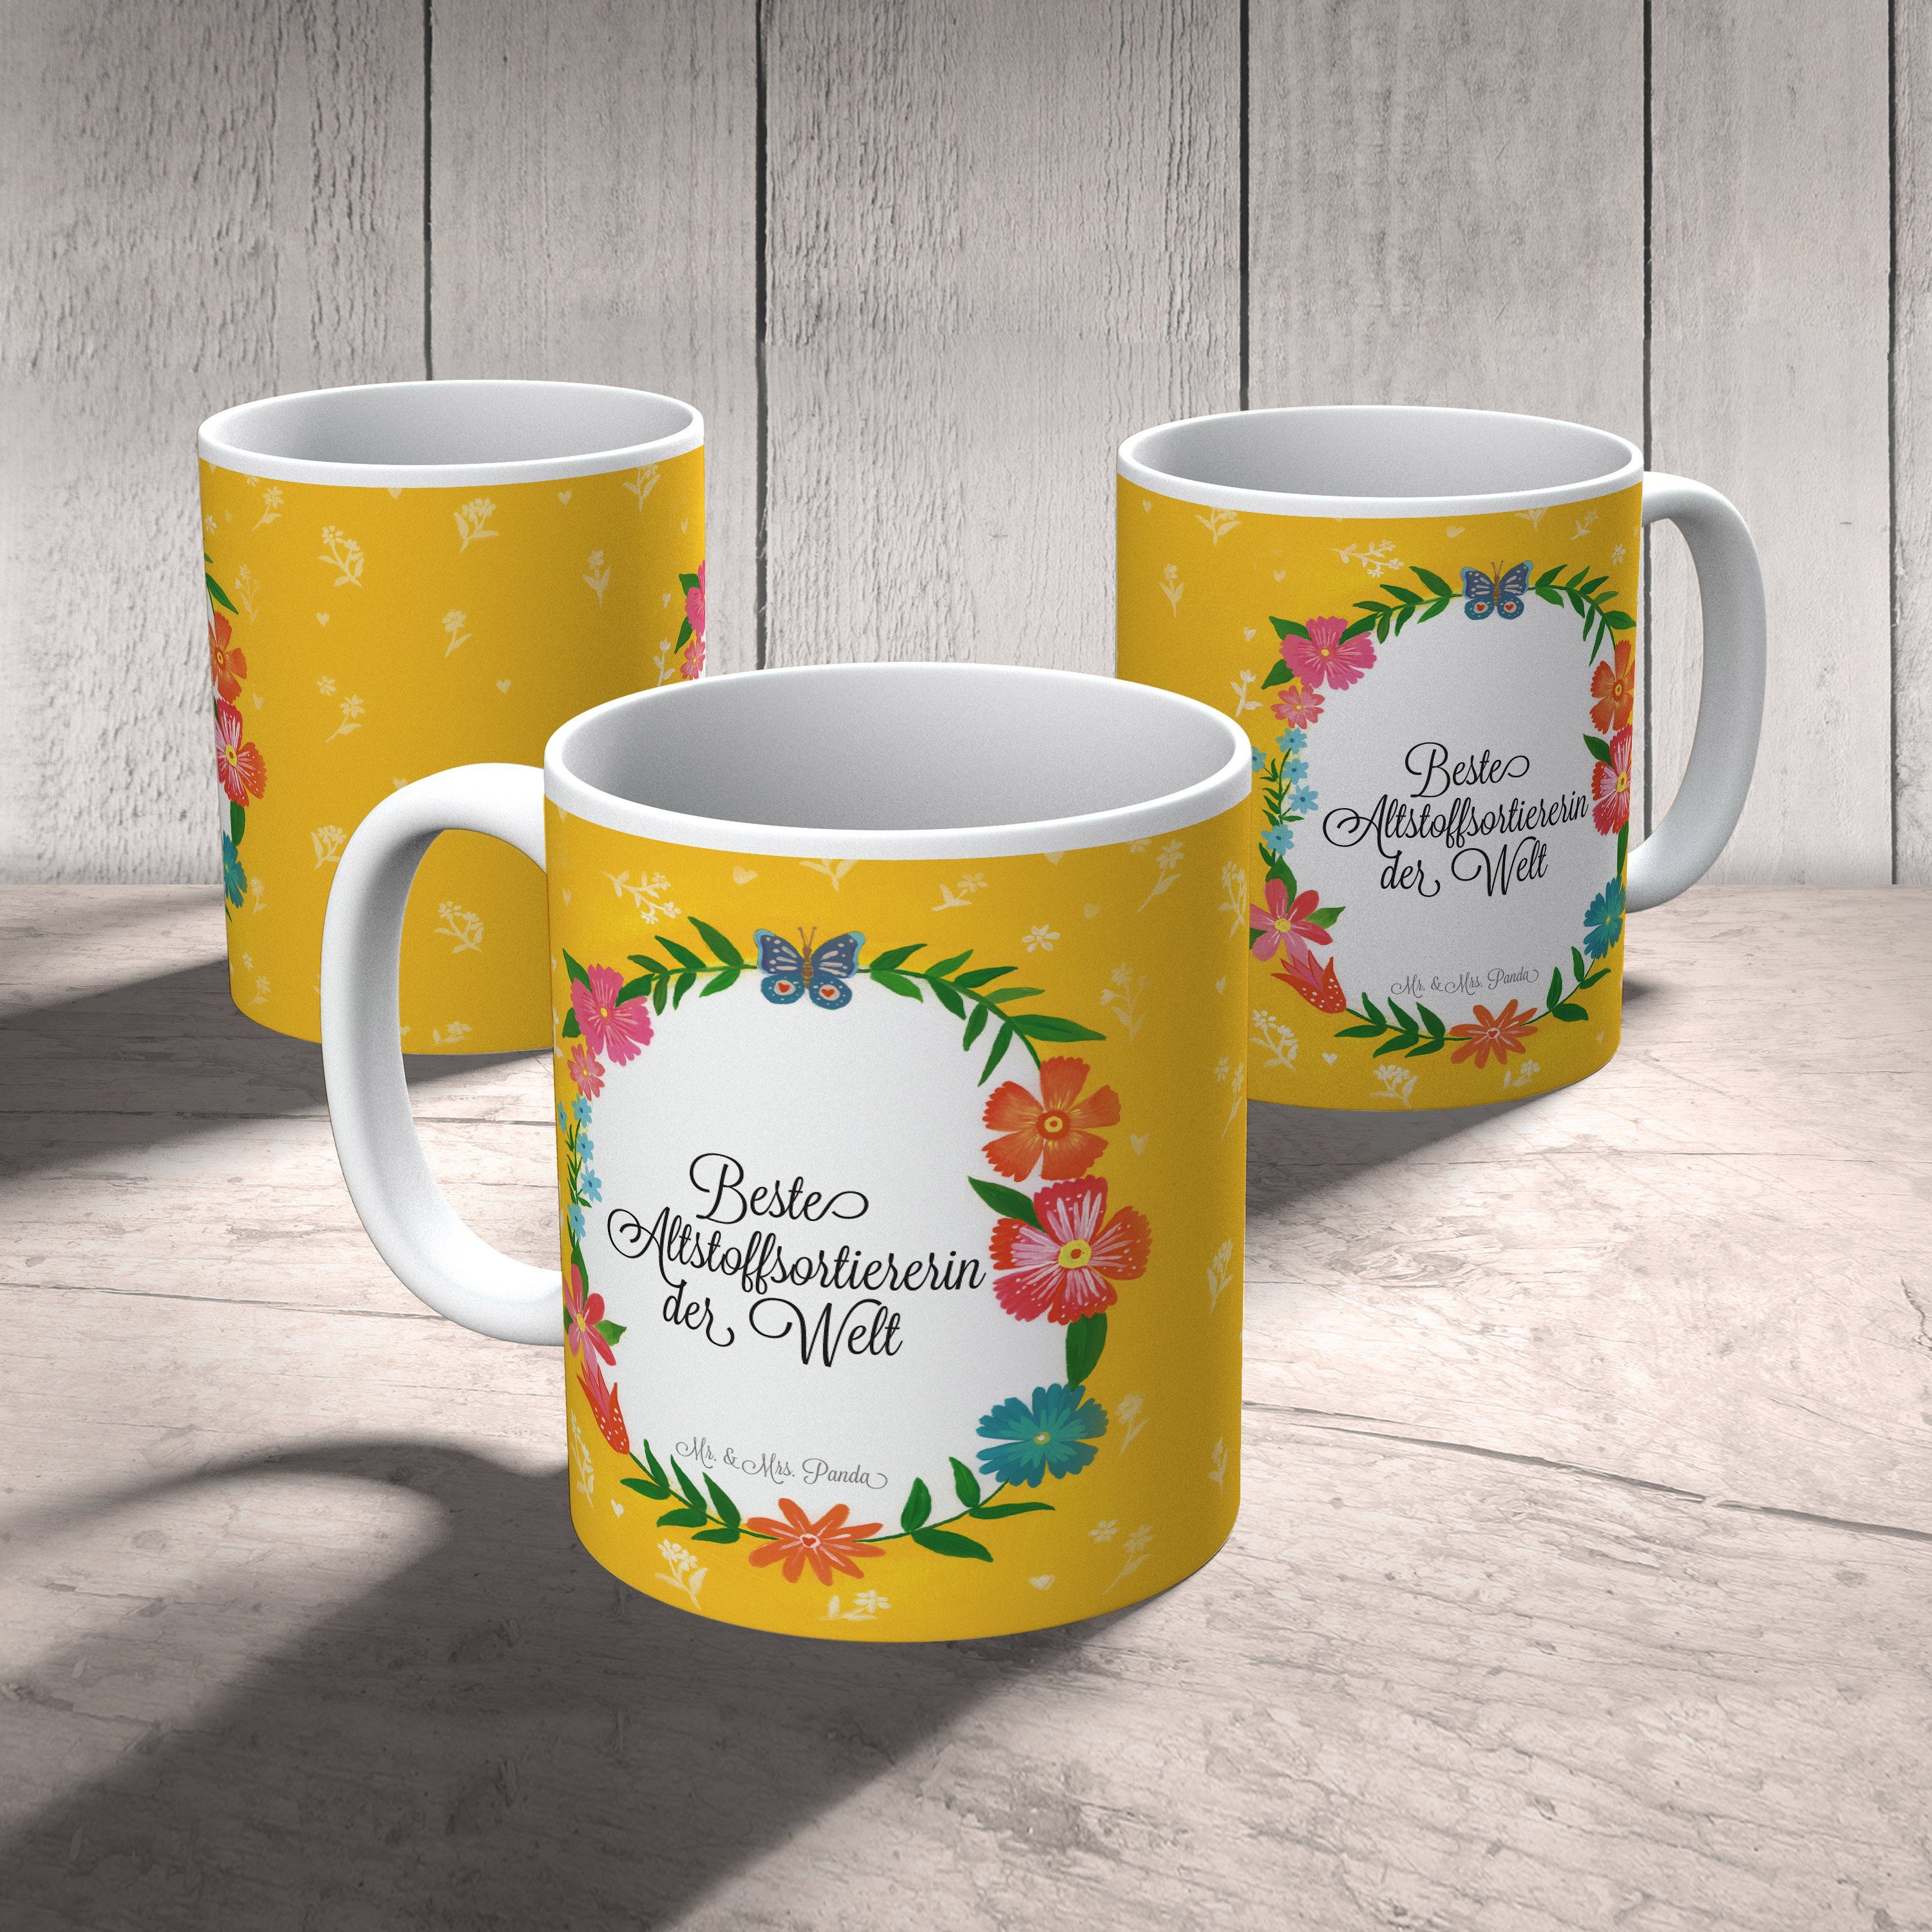 Mr. & Mrs. Panda Tasse Geschenk, Ausbildung, Mot, - Altstoffsortiererin Geschenk Tasse Keramik Tasse